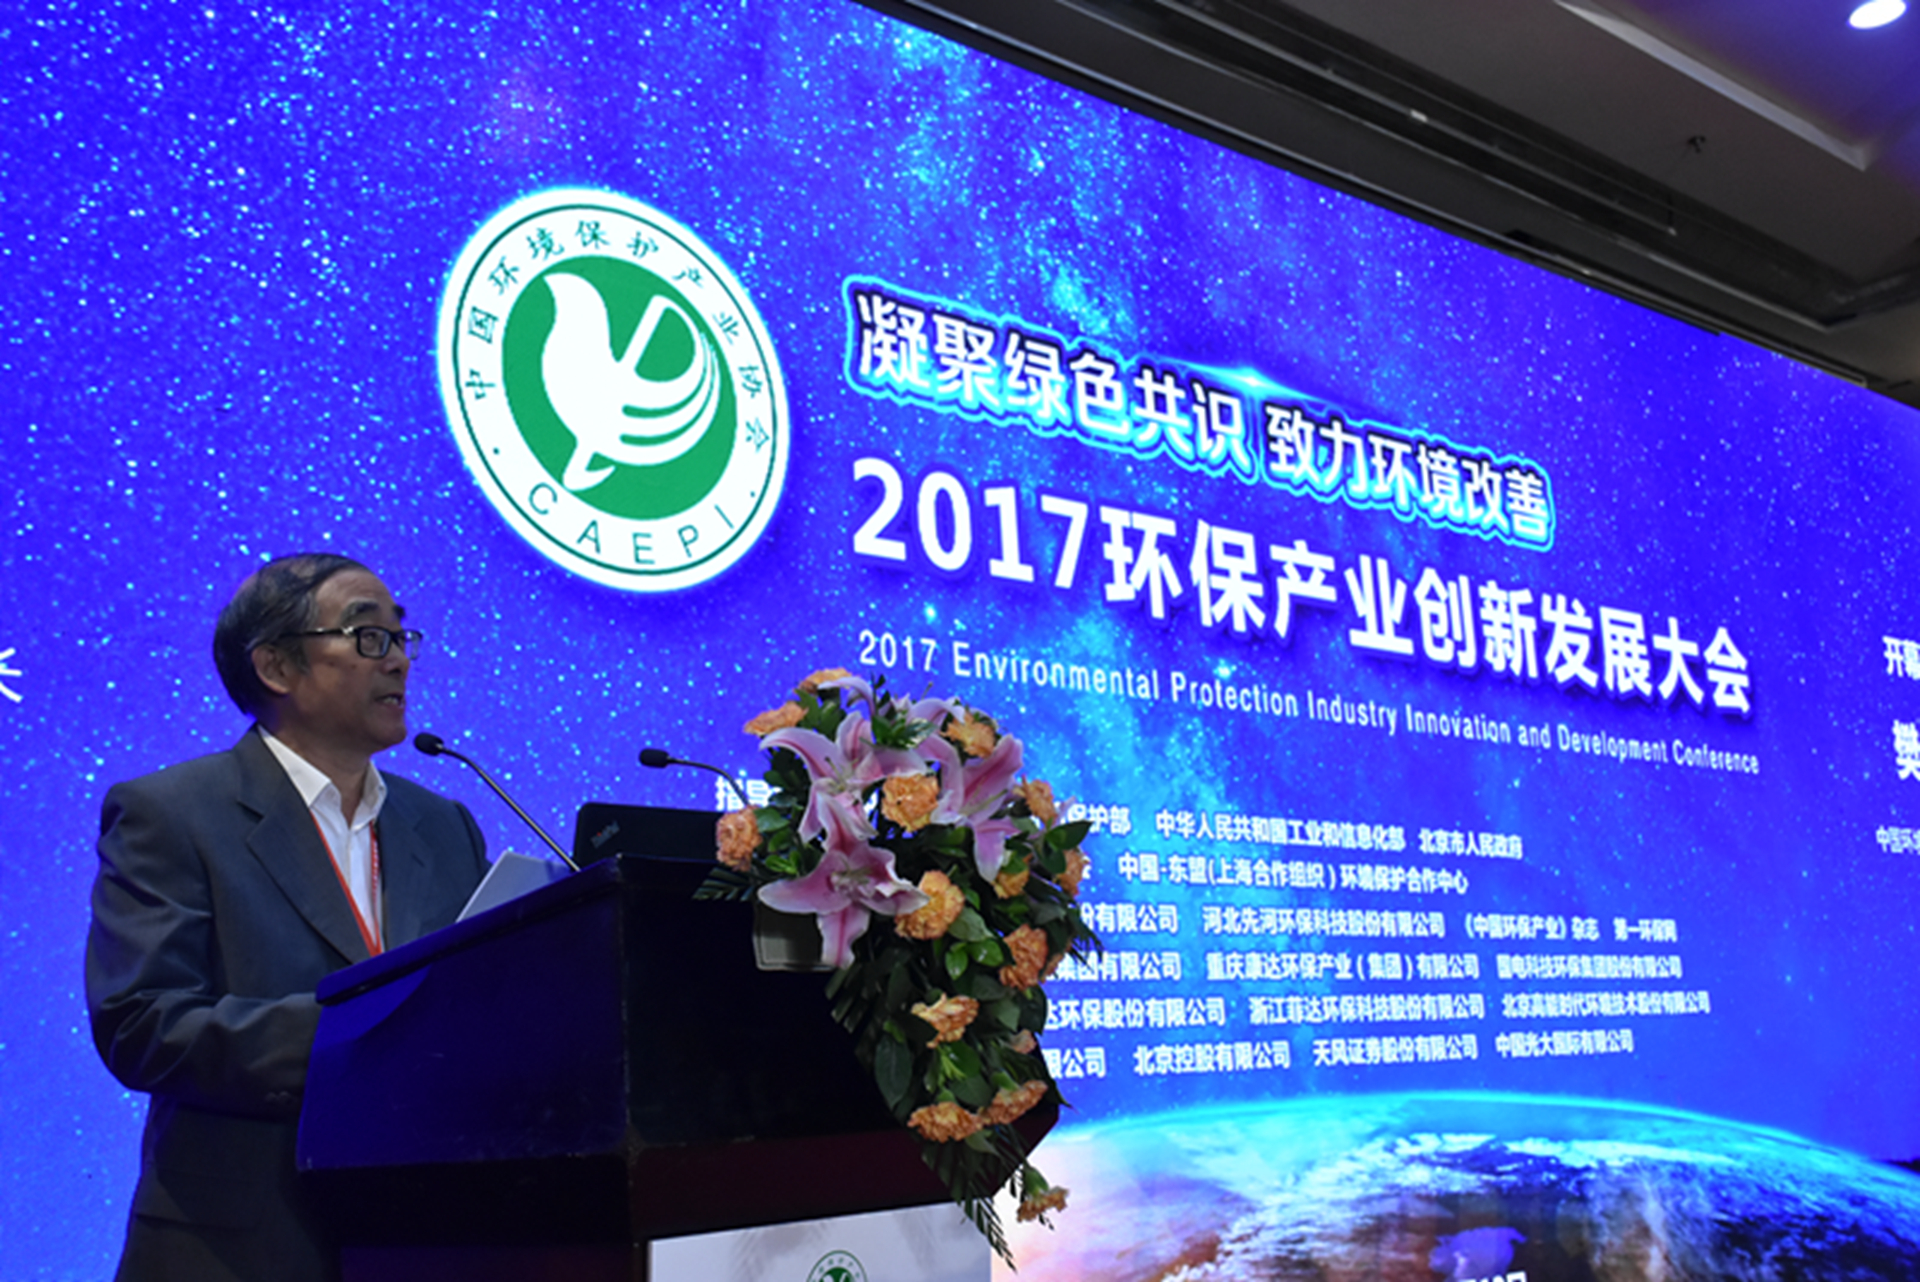 2017环保产业创新发展大会